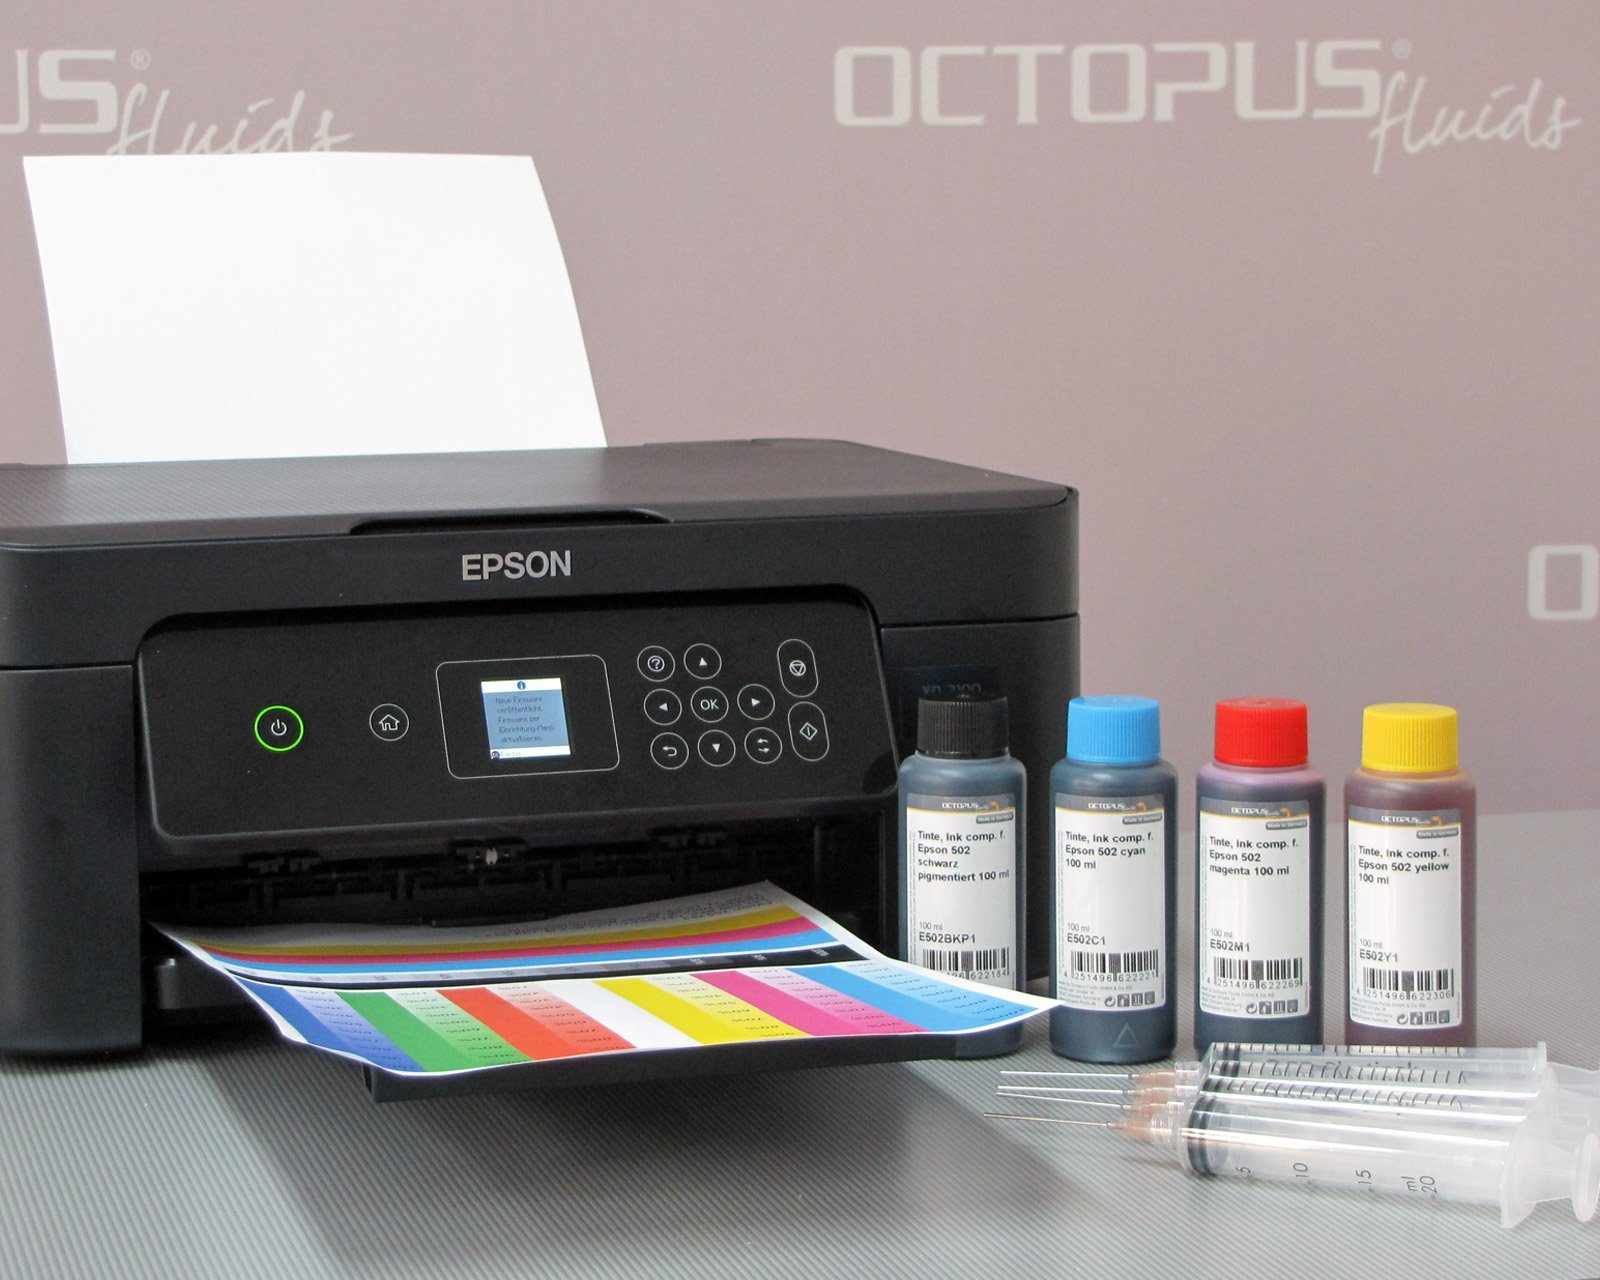 1x Ink ml) OCTOPUS Expression comp. XP-2100, Home Epson f. 100 3100, Druckertinte, Nachfülltinte (für Fluids Epson, 603,